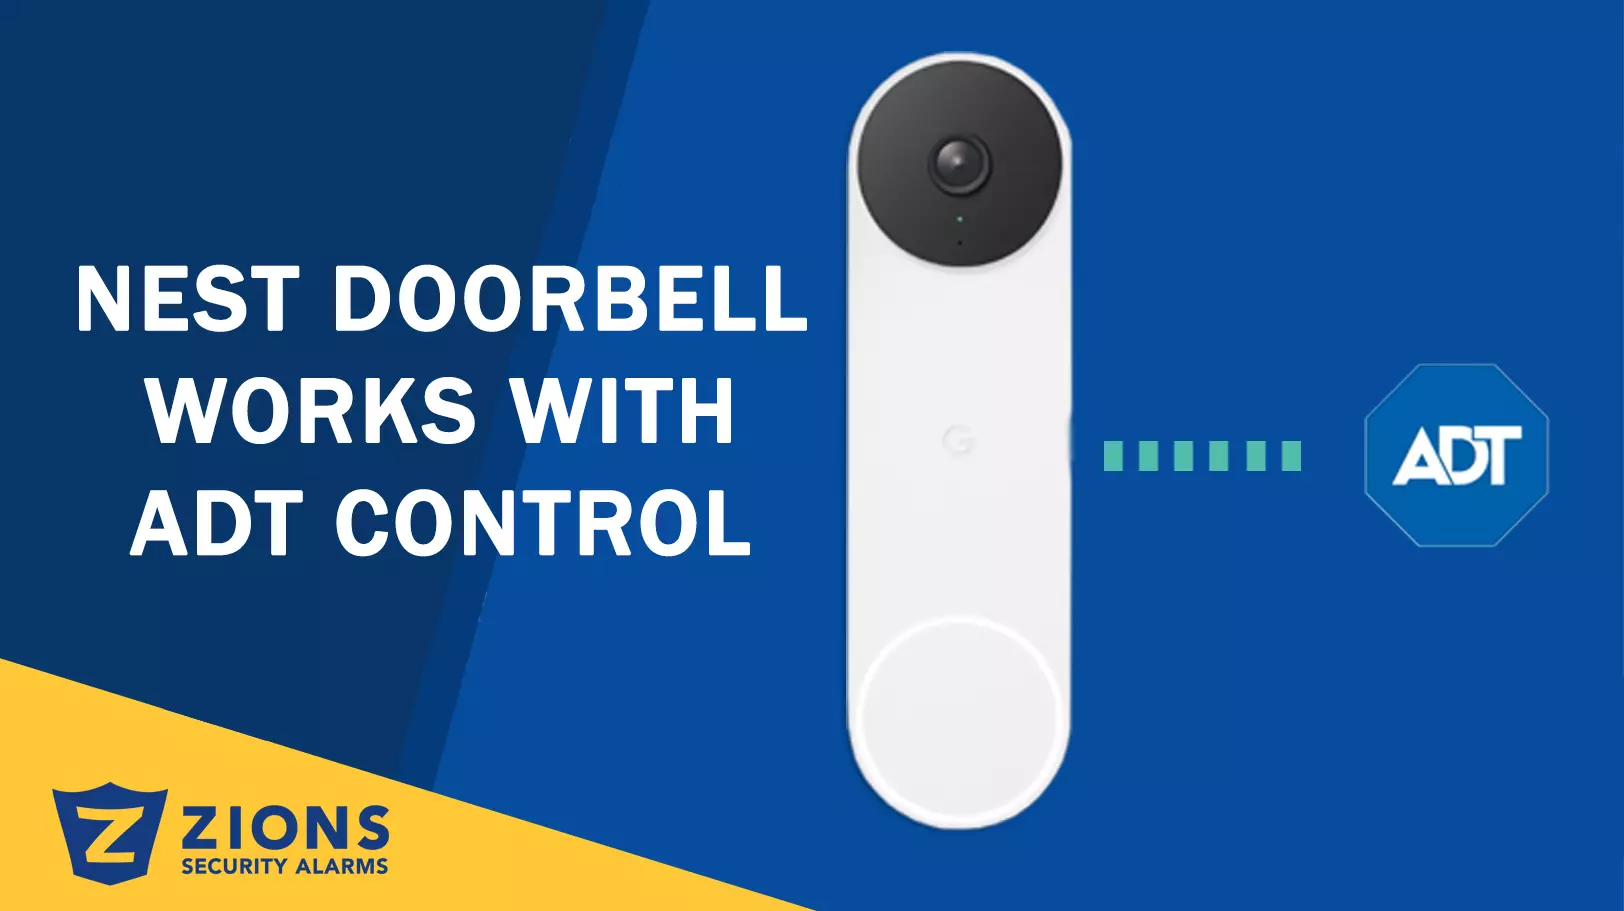 Nest Doorbell ADT Control